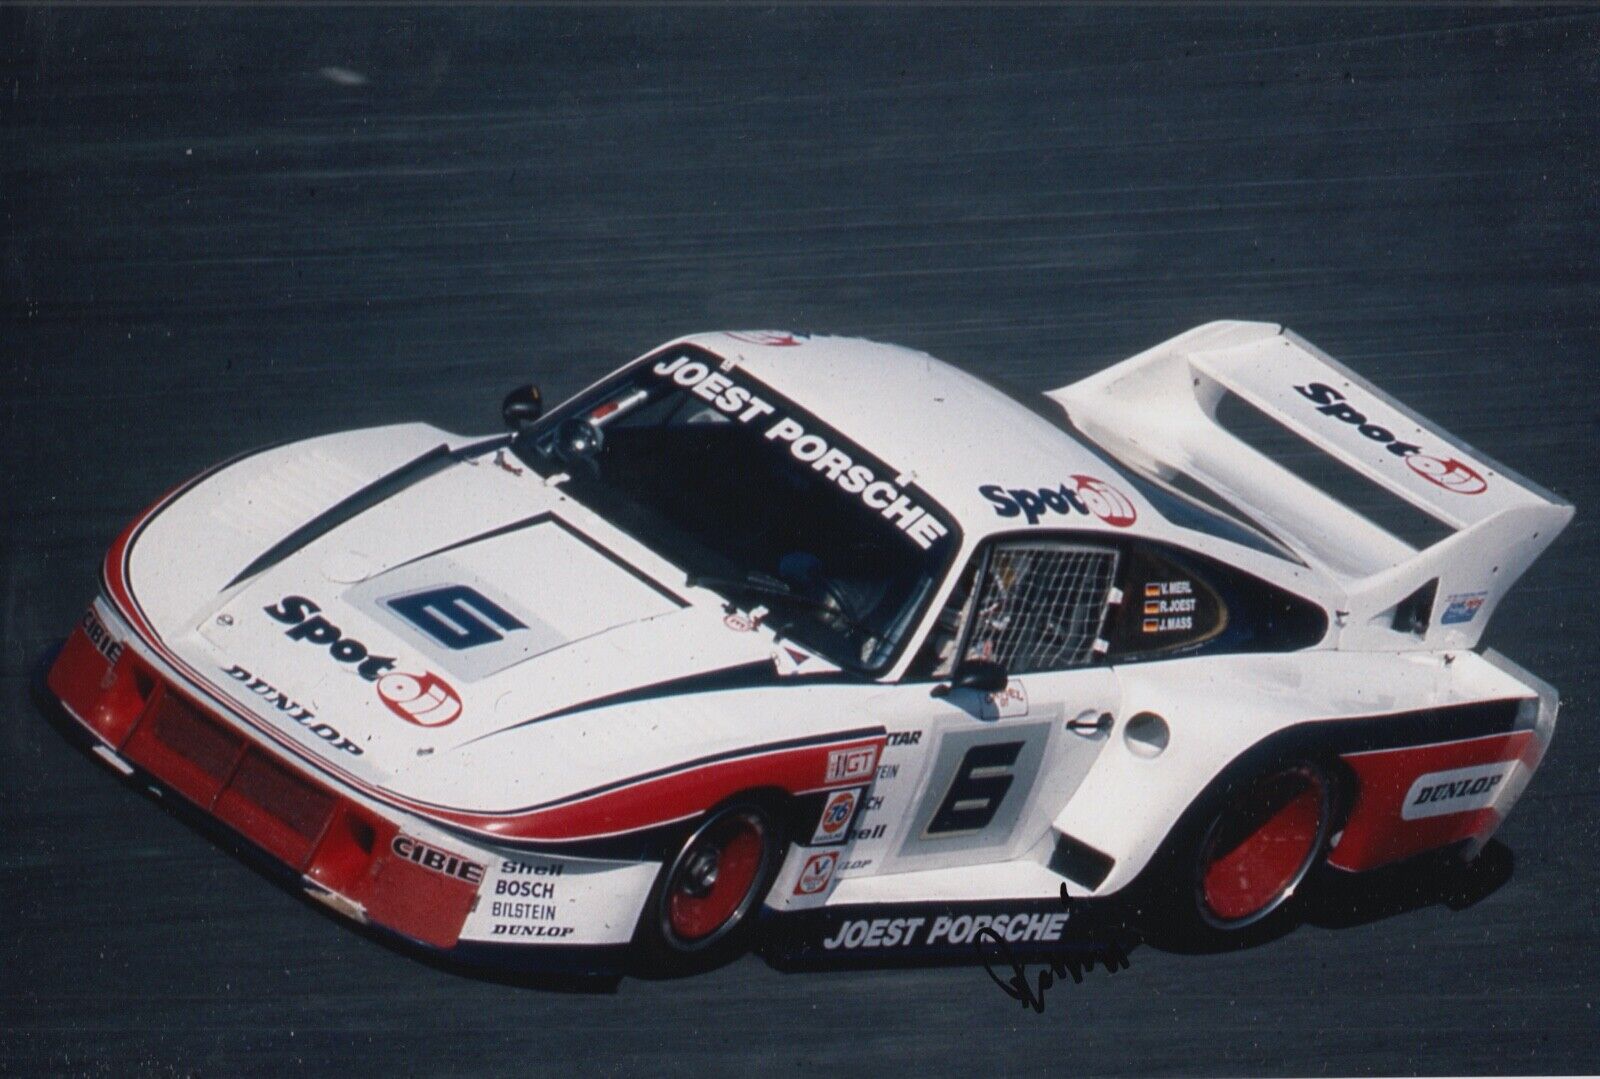 Reinhold Joest Hand Signed 12x8 Photo Poster painting Le Mans Autograph Porsche 16